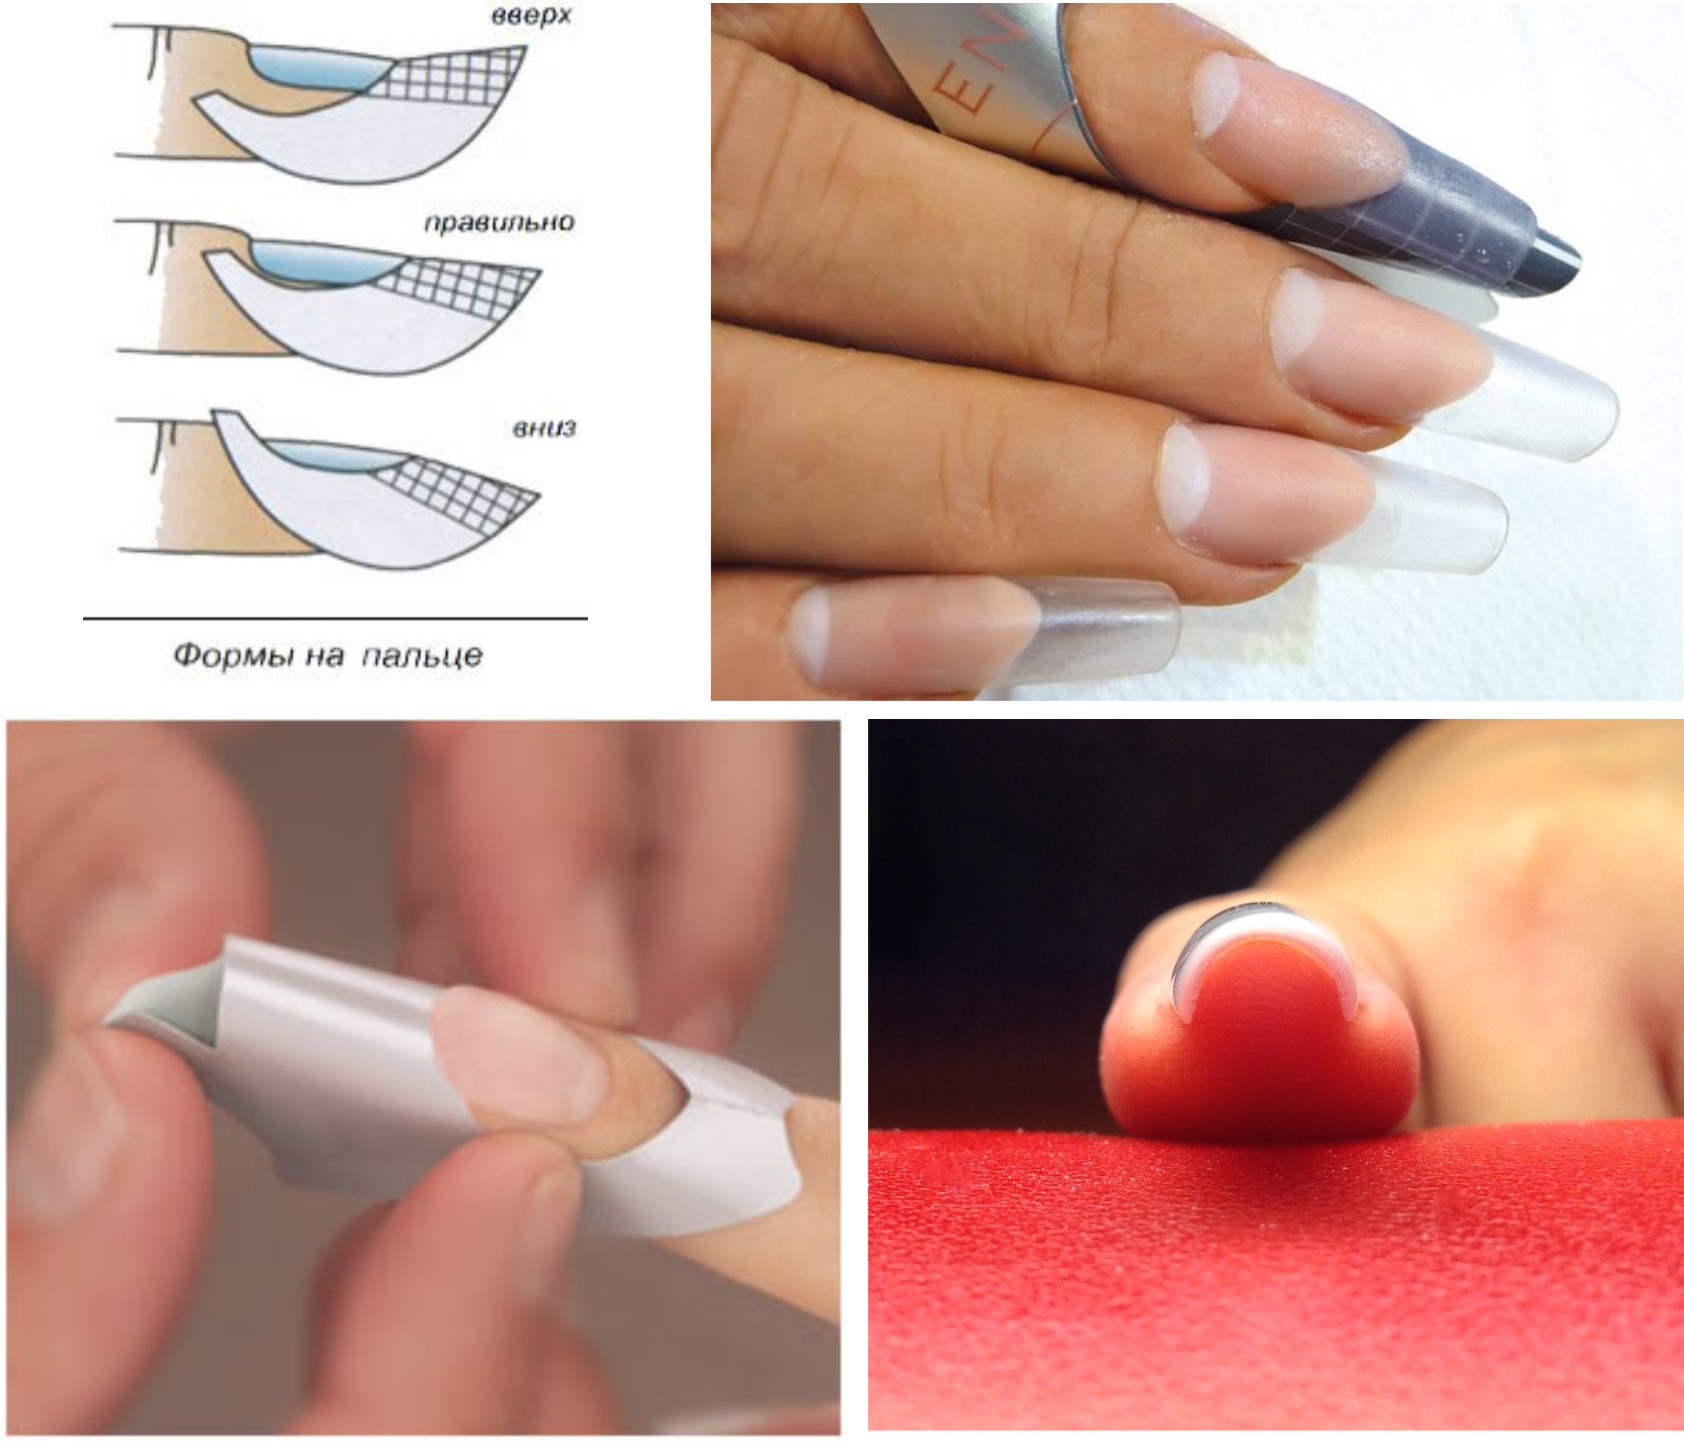 Техника по наращиванию ногтей гелем для начинающих